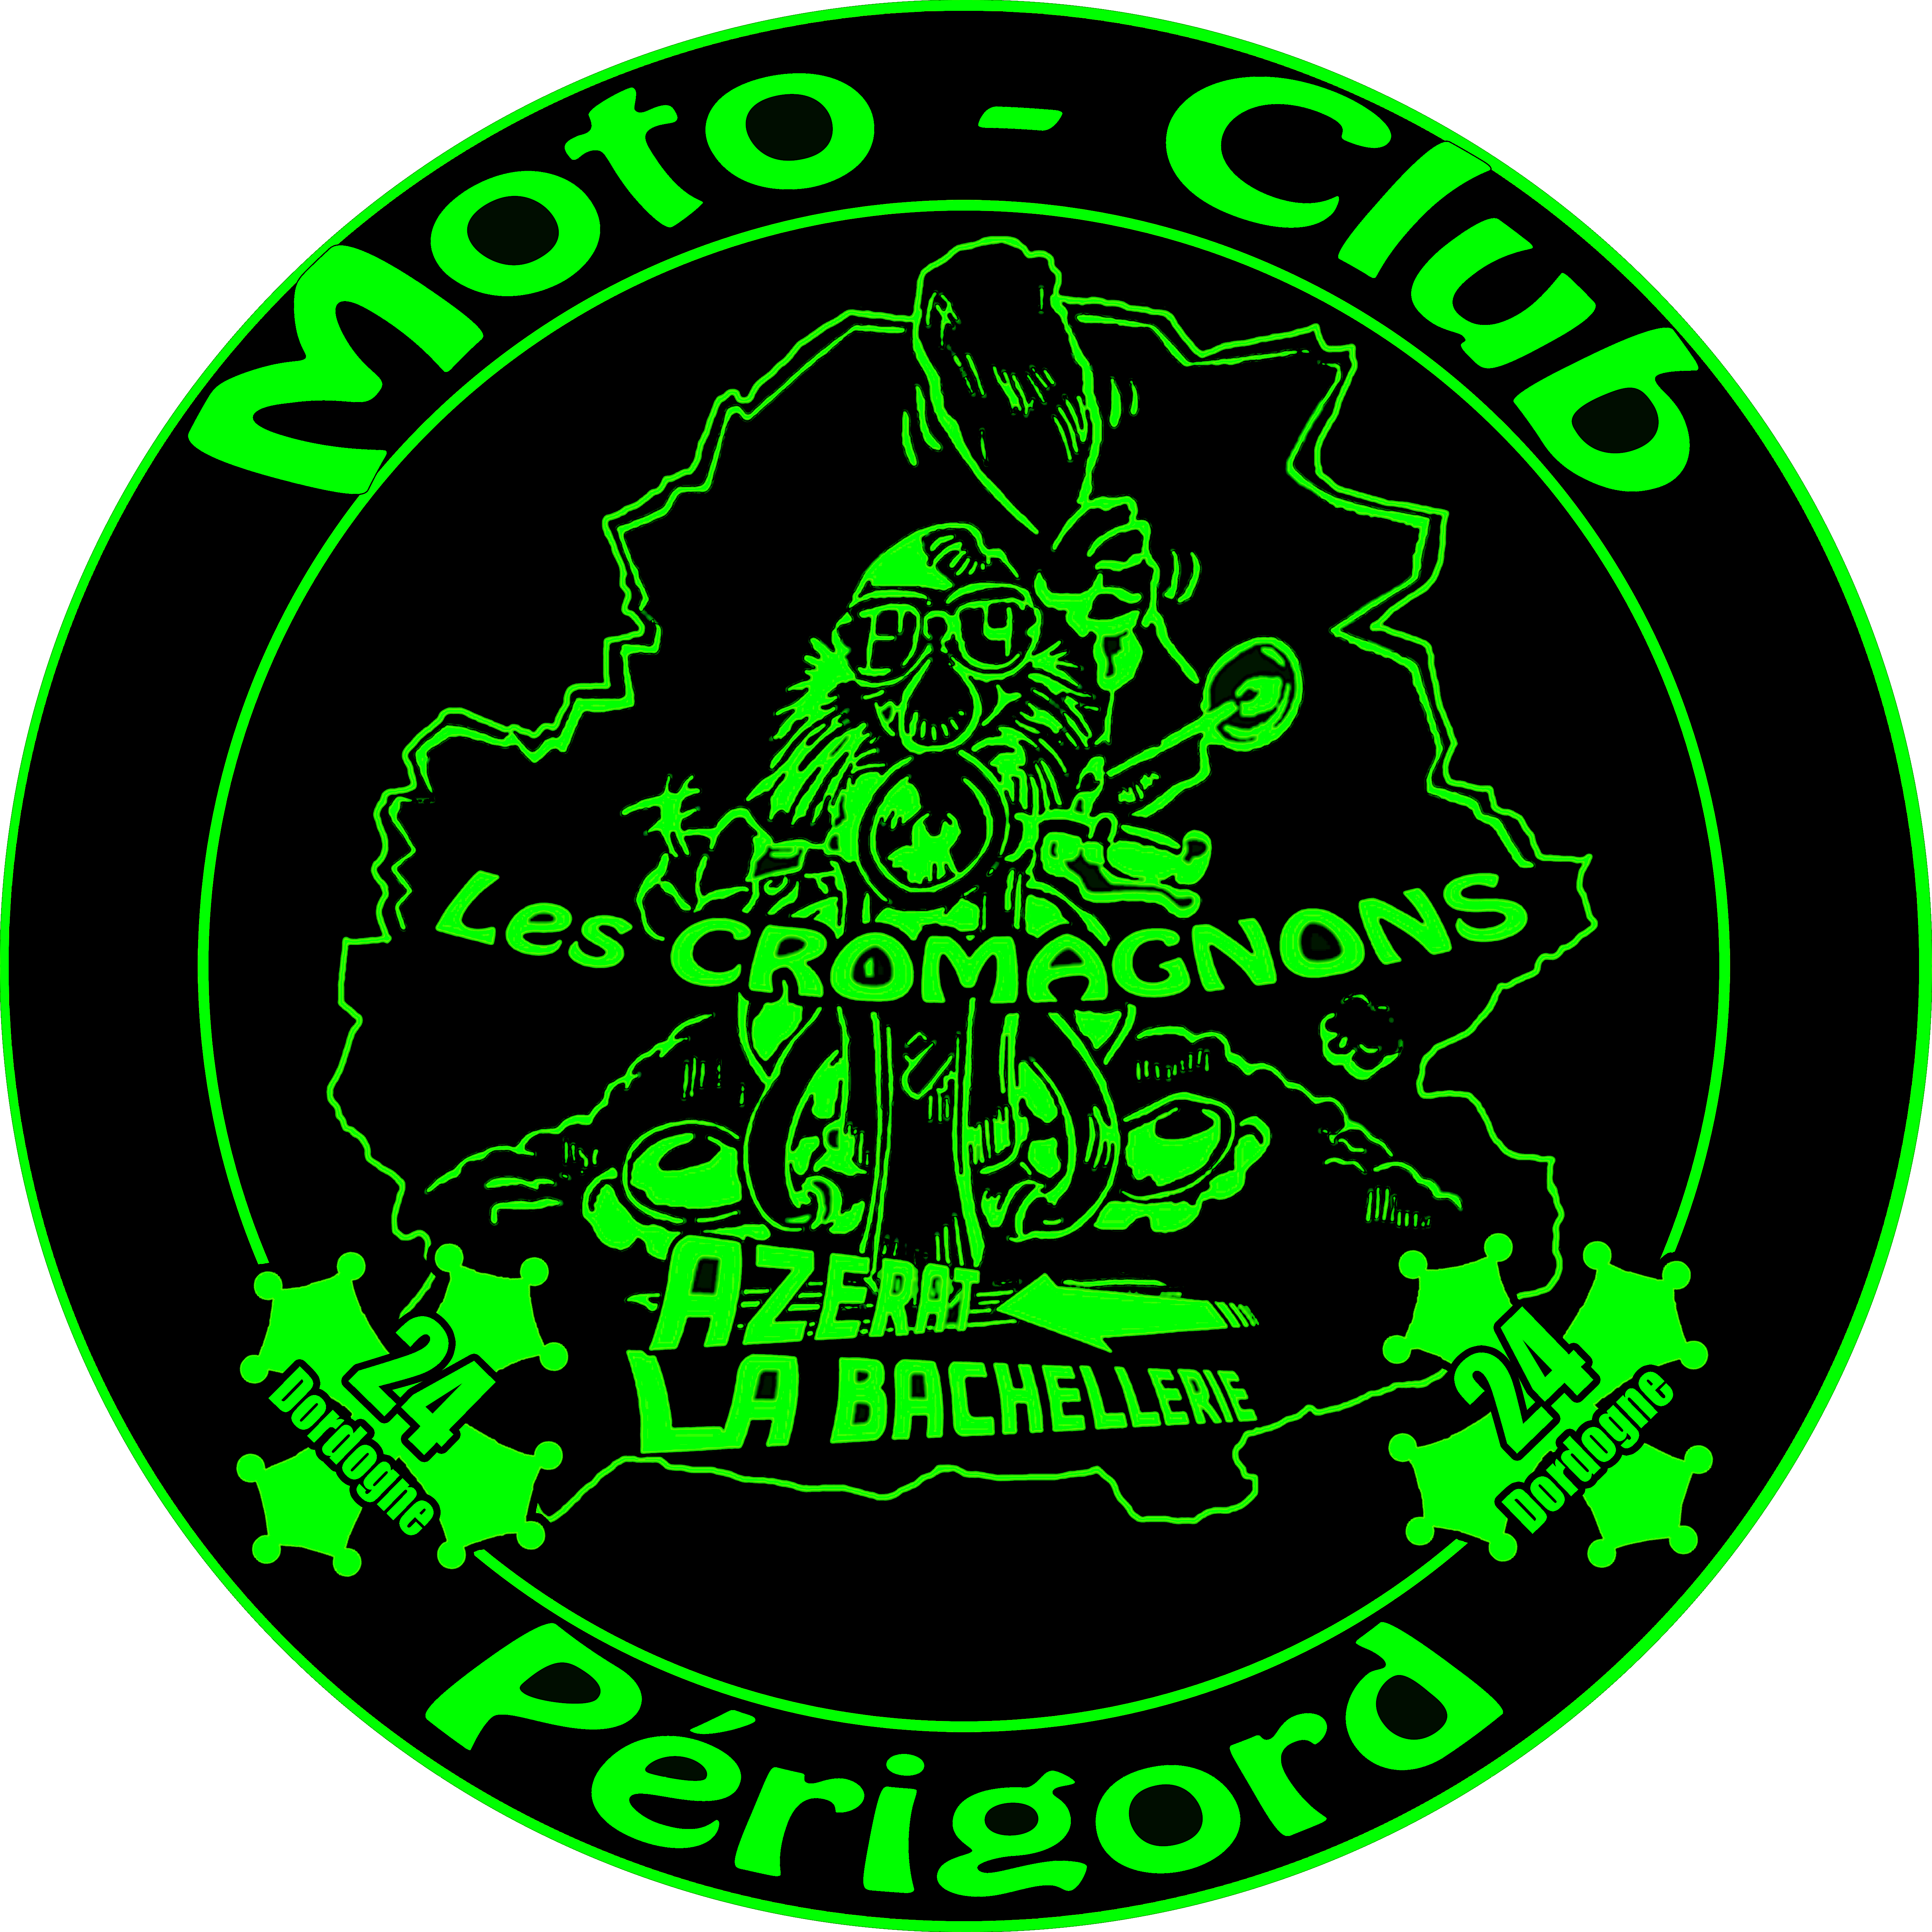 Logo des cromagnons